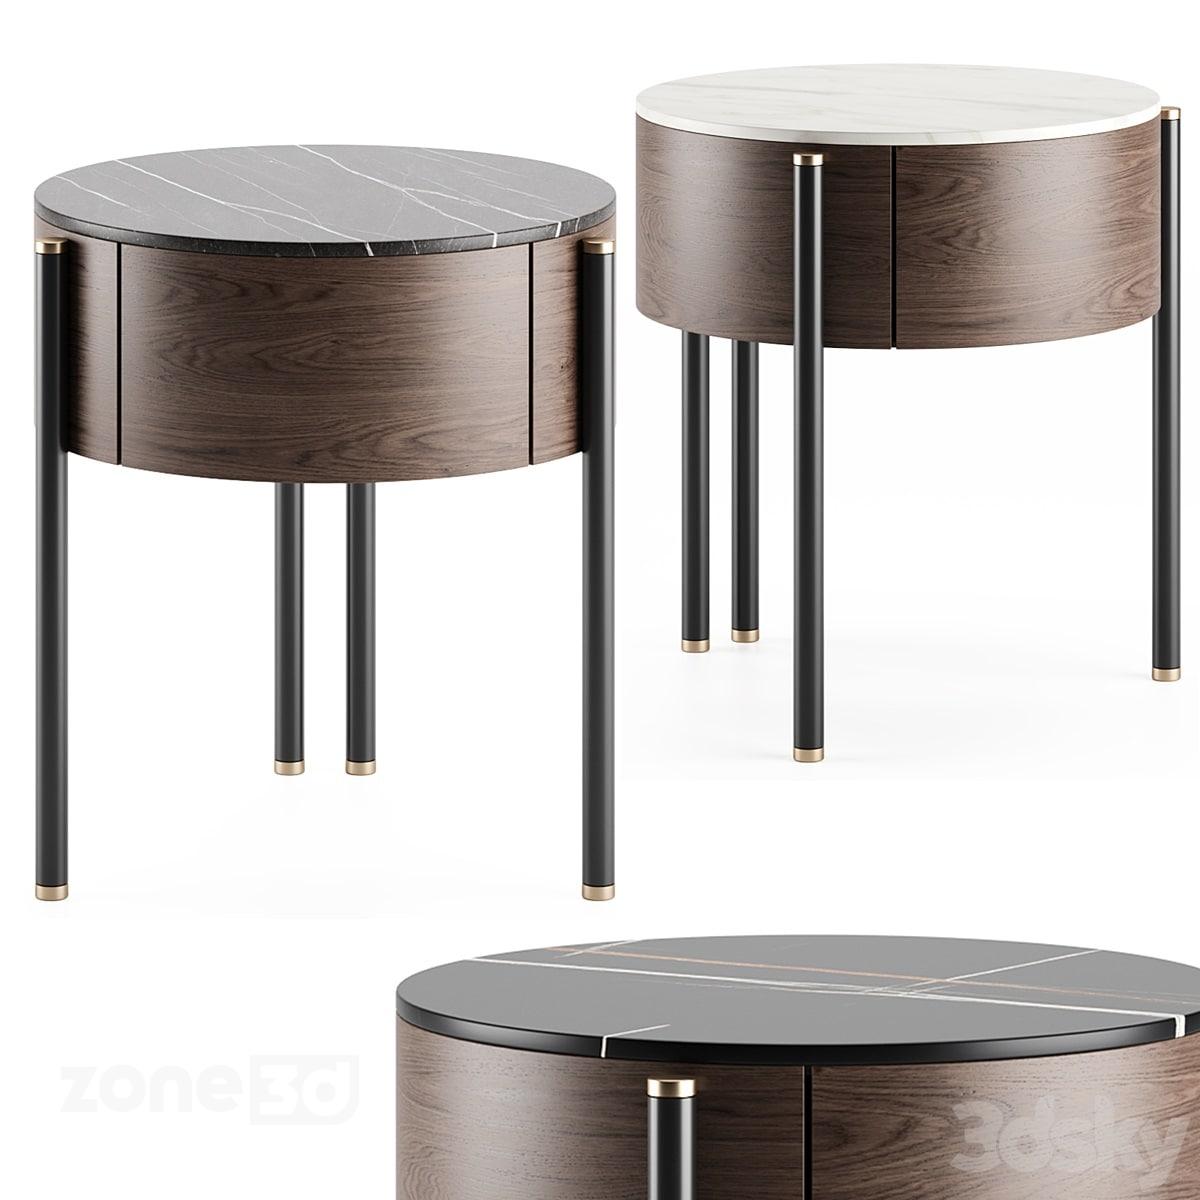 آبجکت ست میز پاتختی گرد مدرن چوبی سه عددی با رویه سنگی و پایه فلزی MAYFAIR